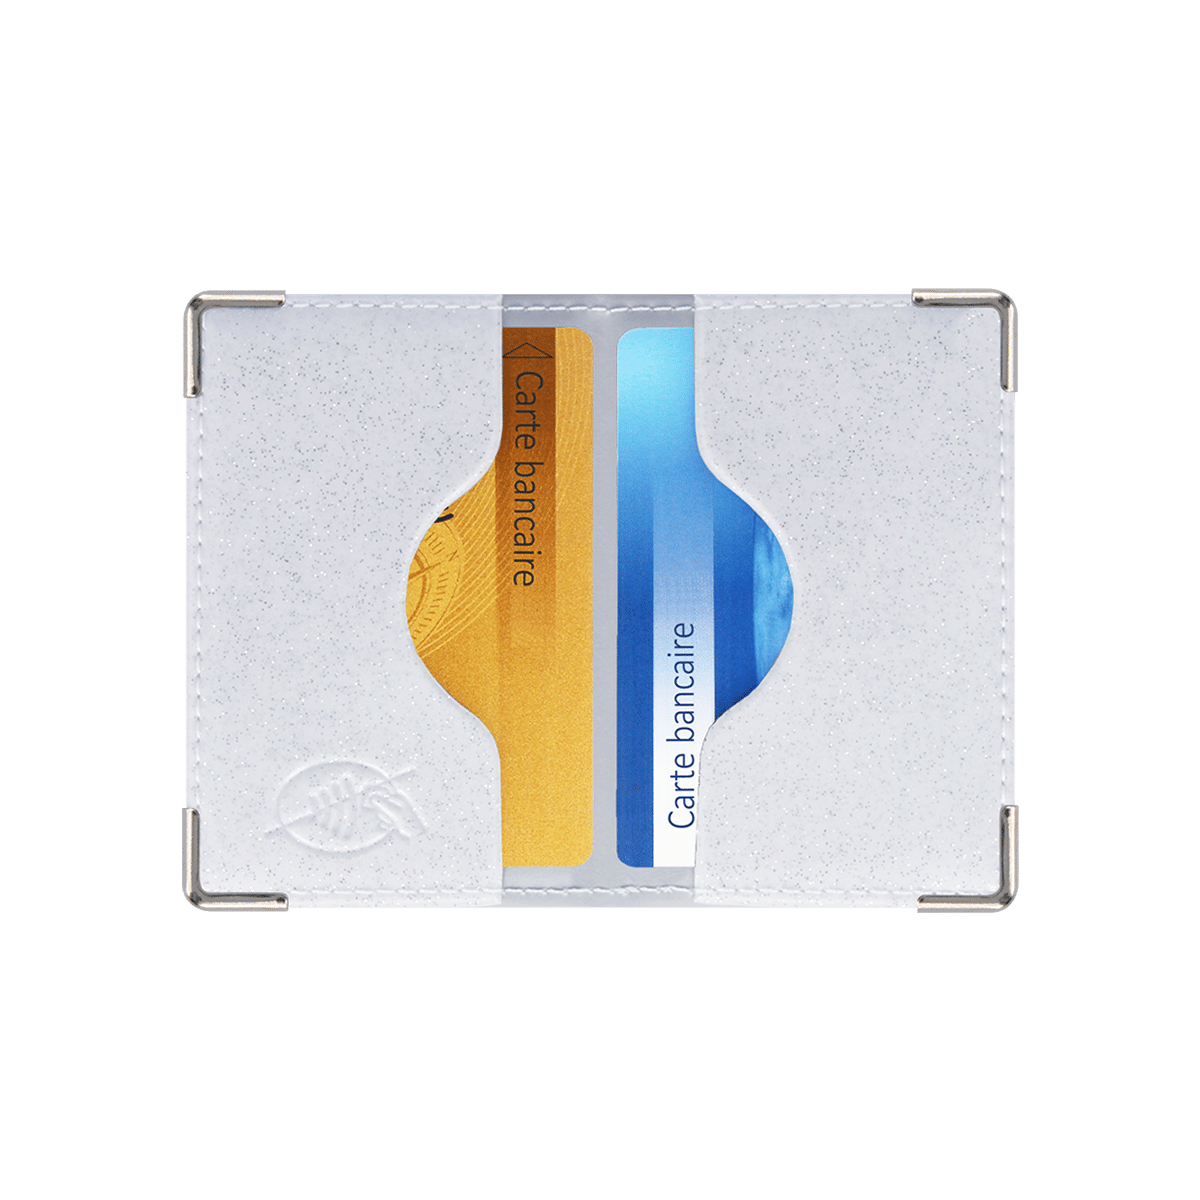 Porte-cartes (12) vernis - Color Pop (Auxence) - Maroquinerie Française  Livraison gratuite